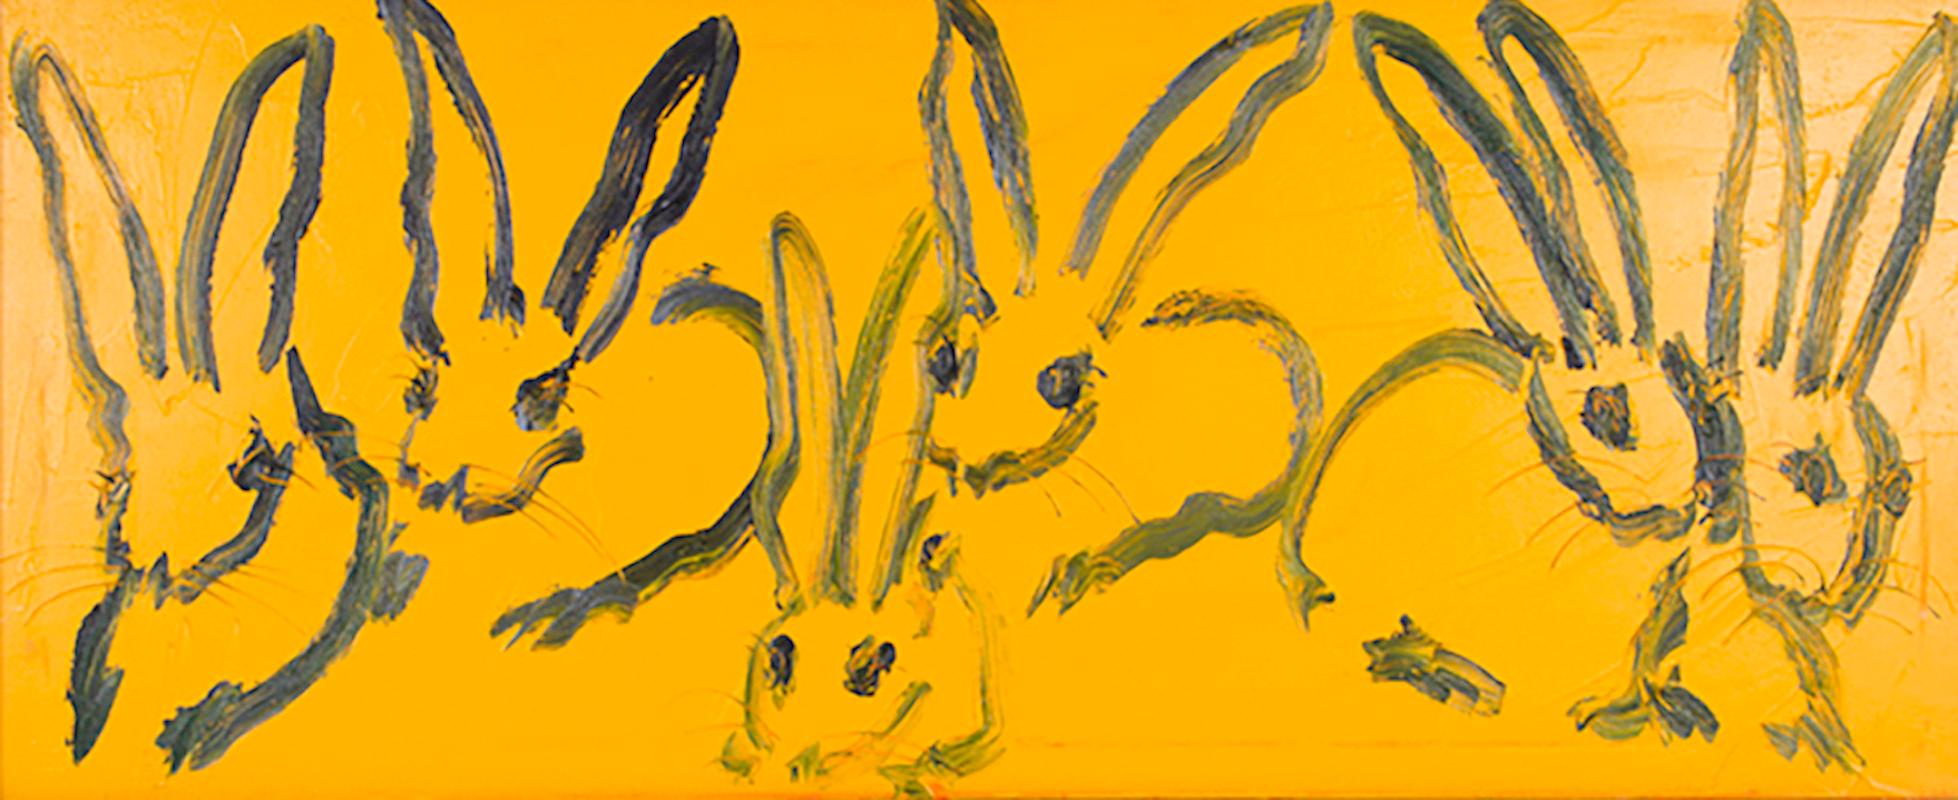 Hunt Slonem Animal Painting - Rabbit Run, 1097